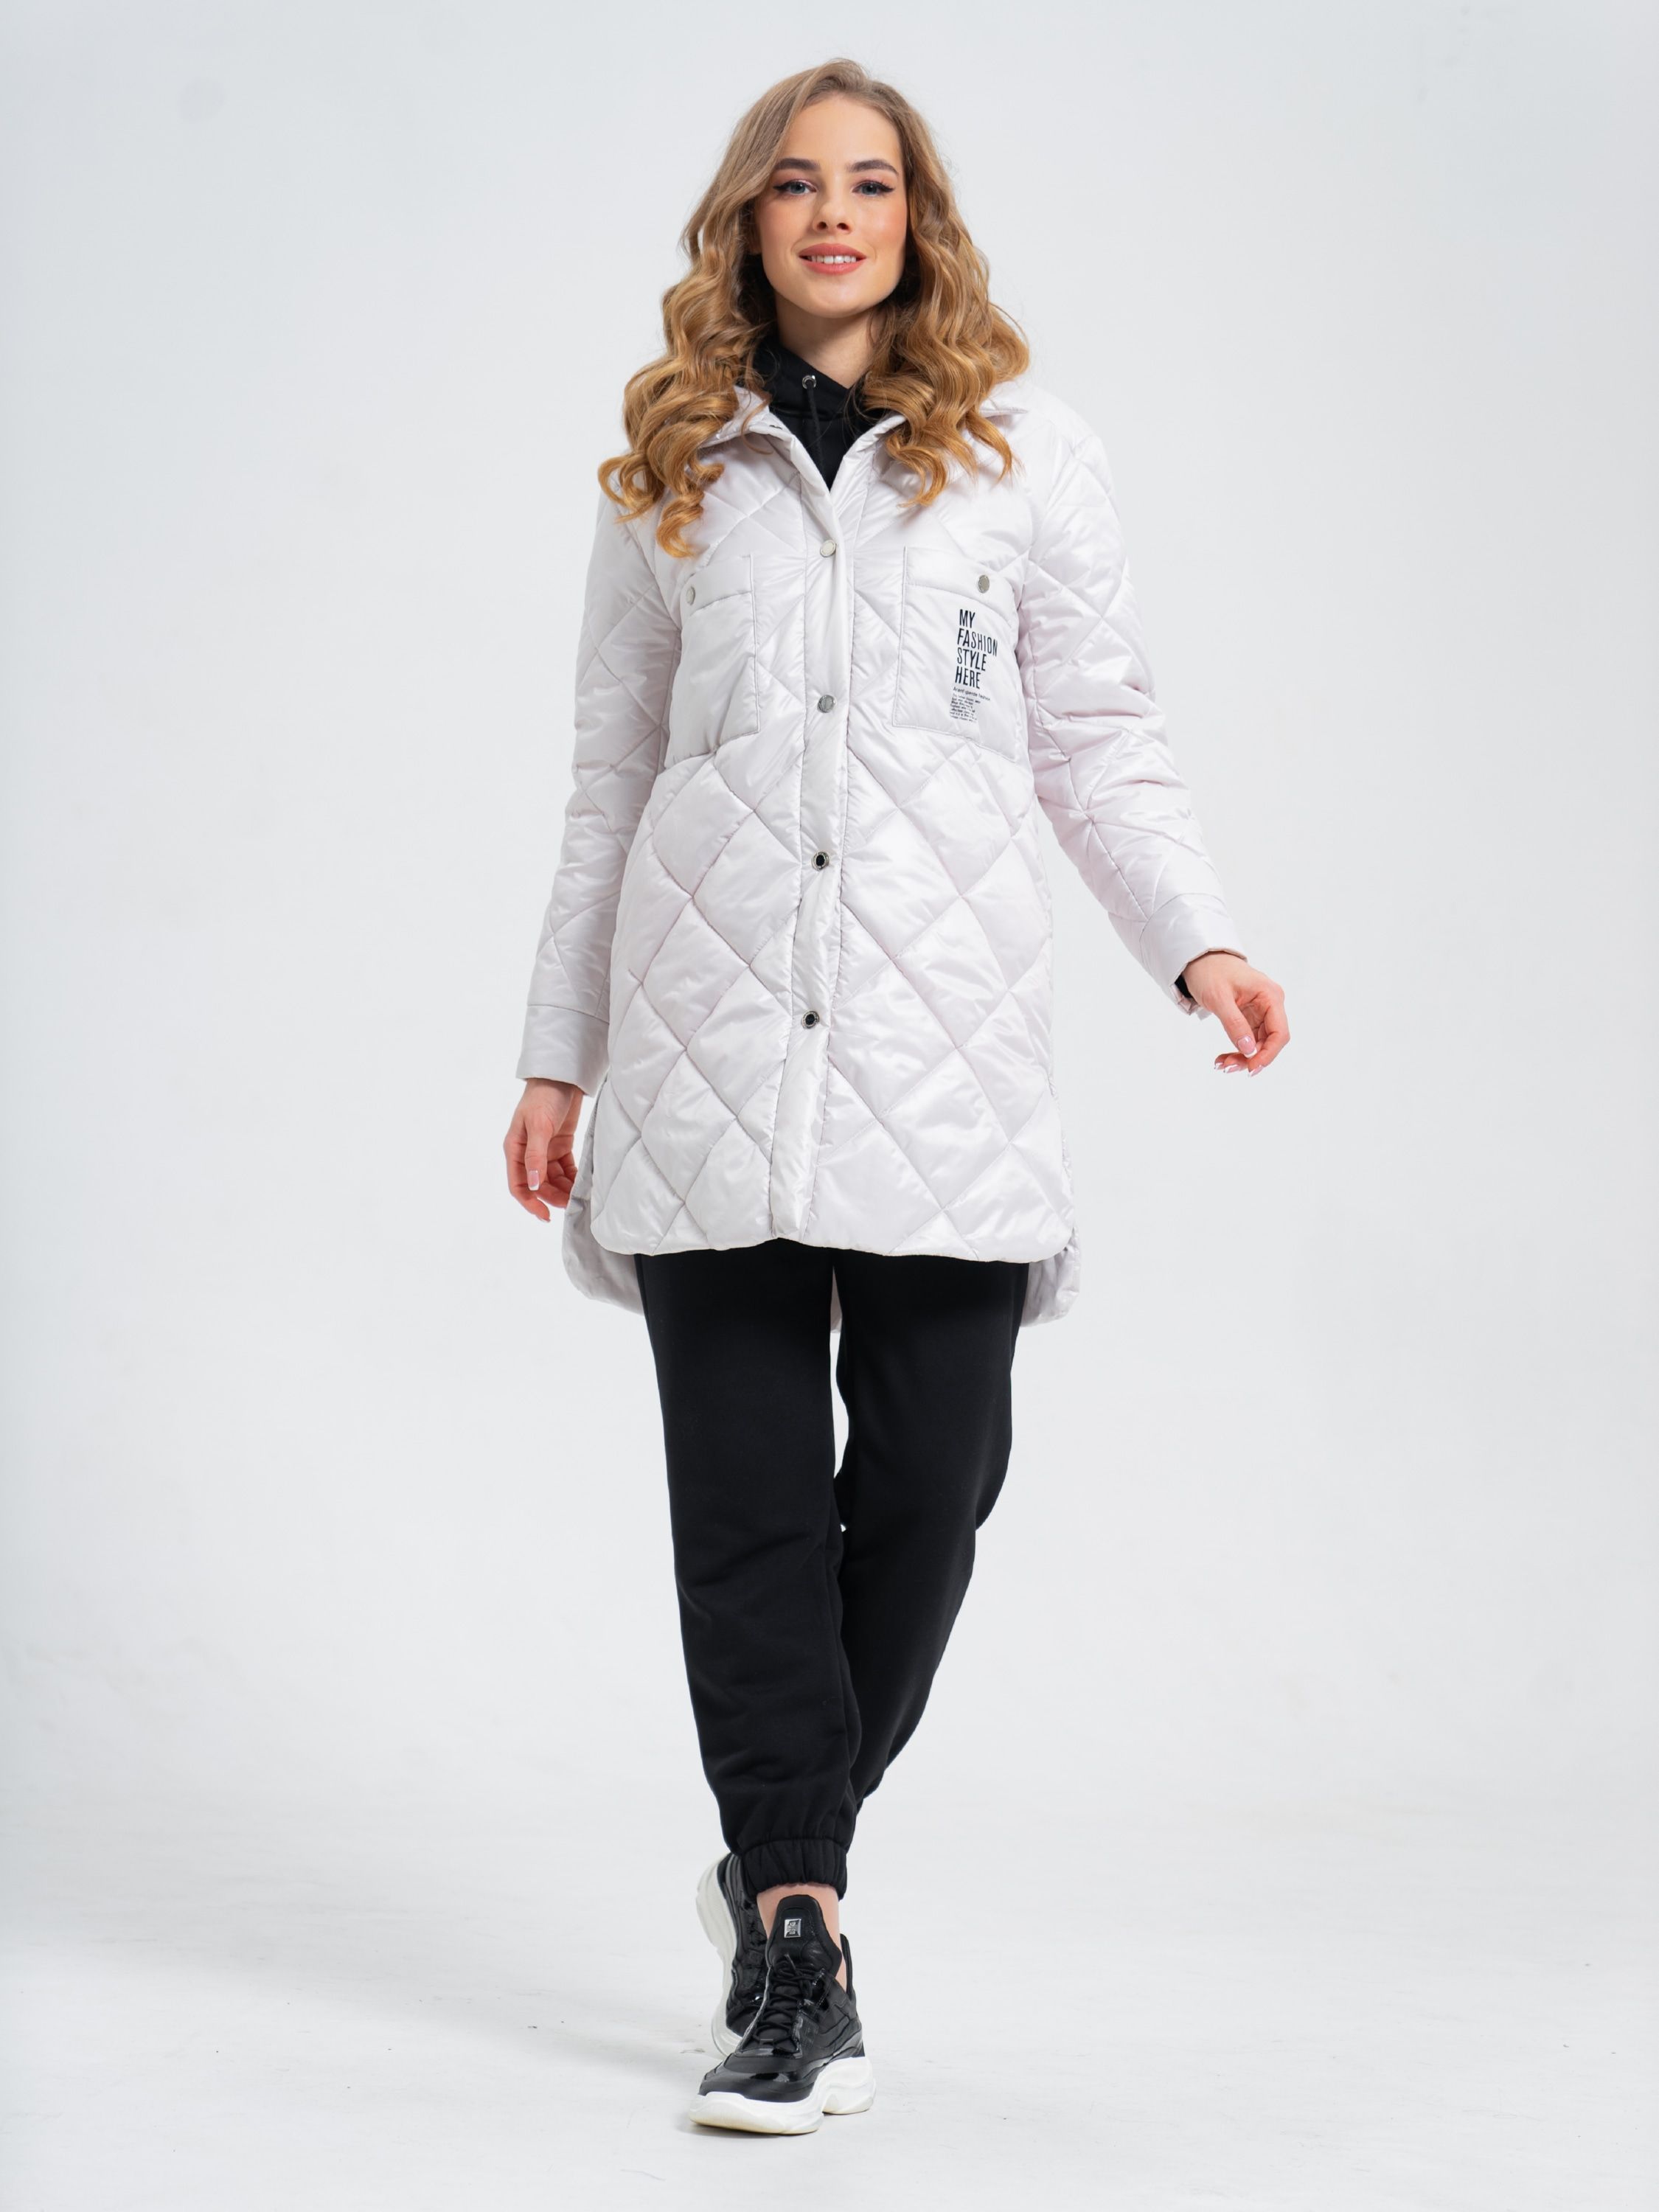 Куртка Bpc Bonprix Collection , Bonprix – купить в интернет-магазине OZON  по низкой цене